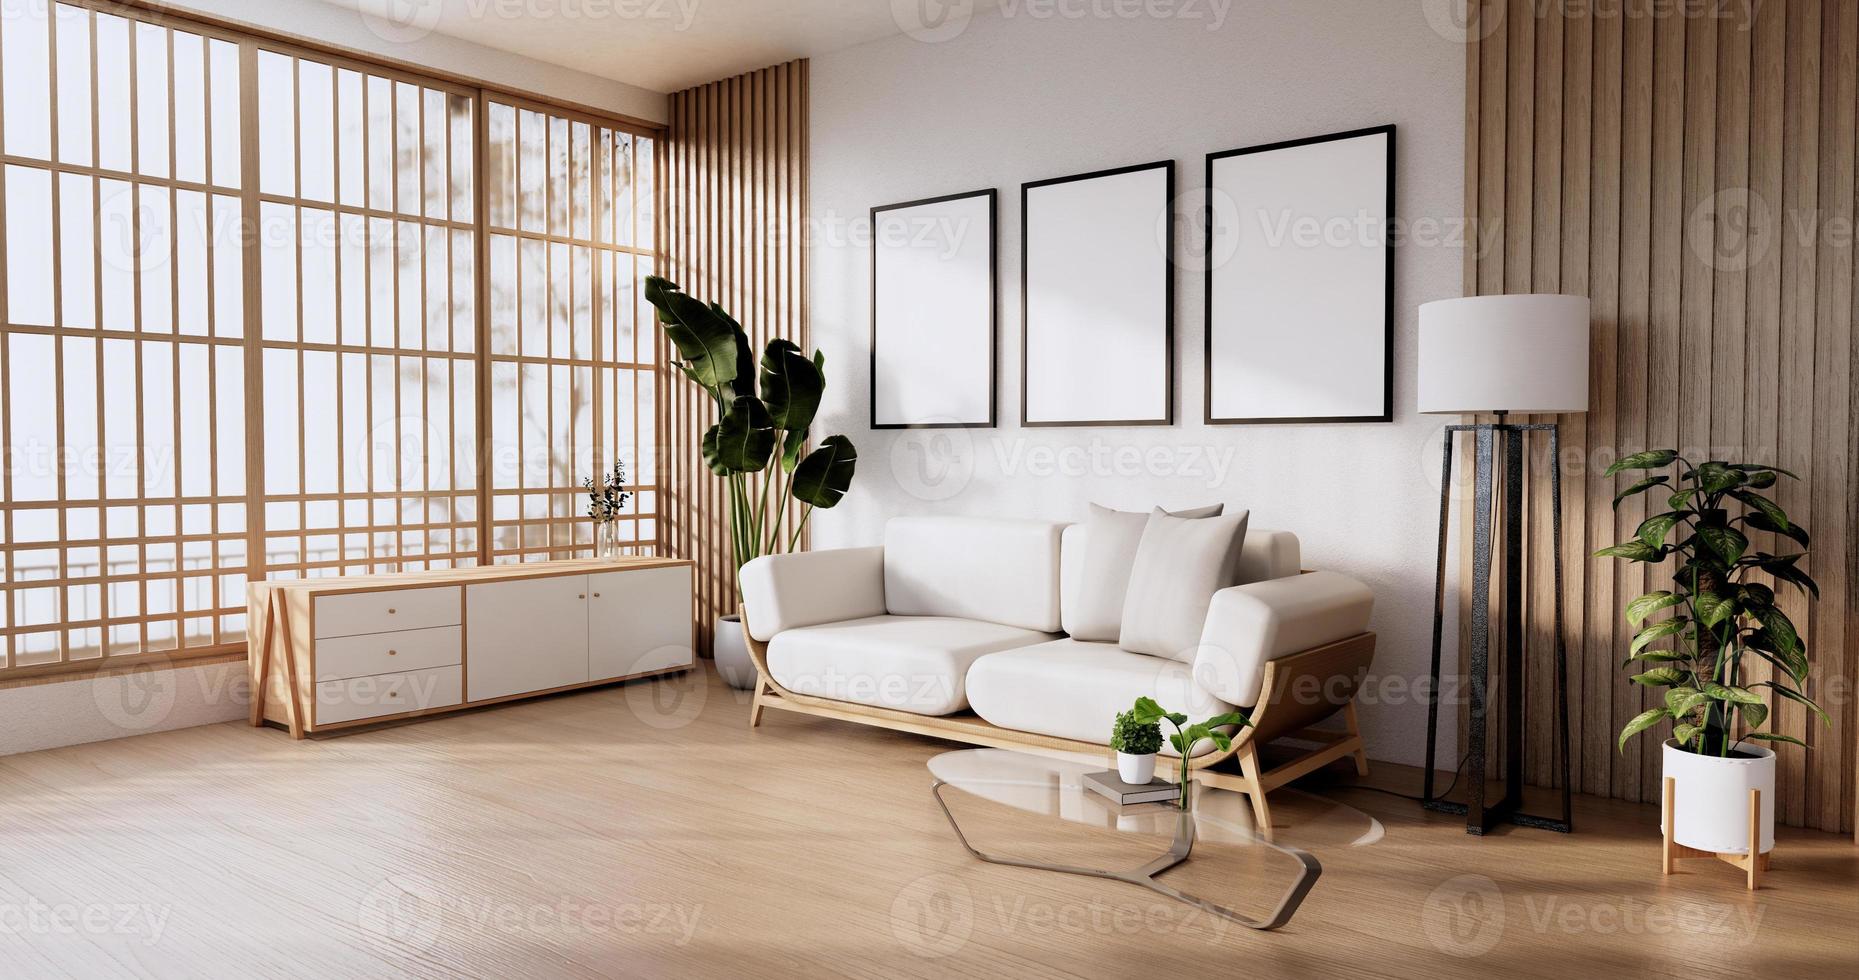 Sofamöbel und modernes Raumdesign des Modells minimal.3D-Rendering foto